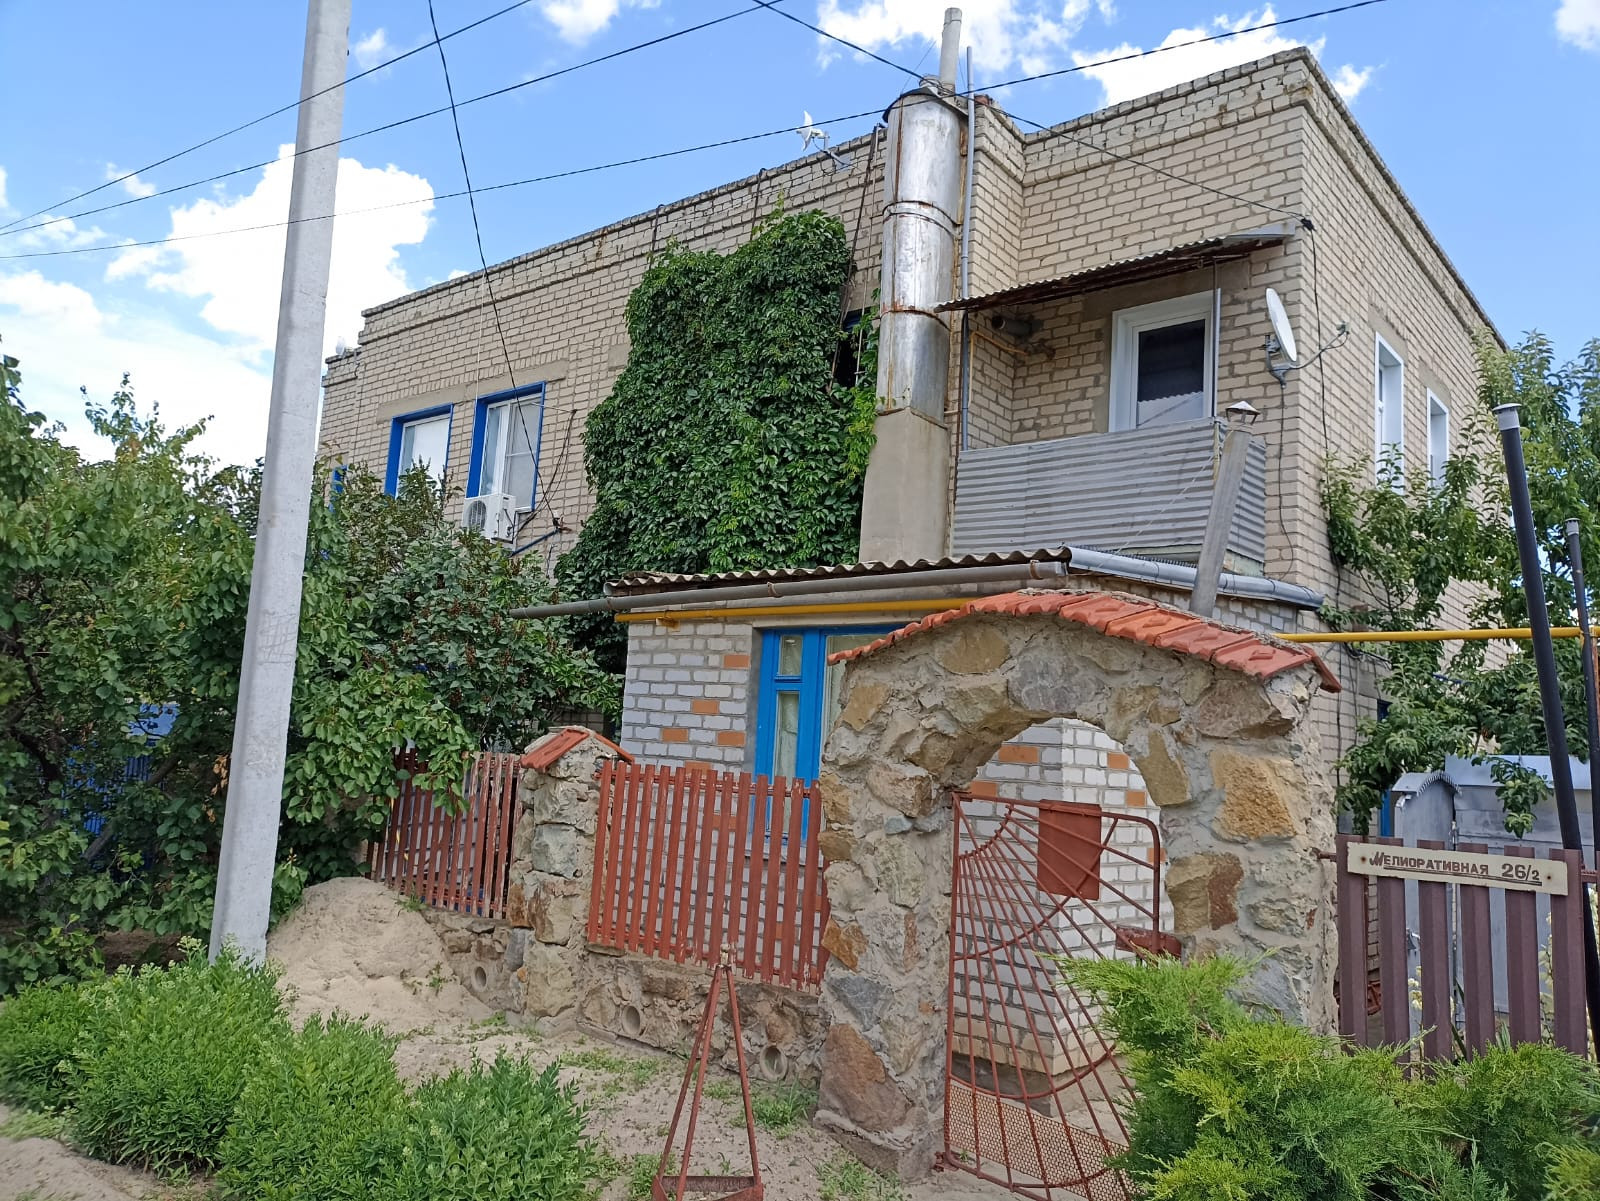 Дом в Котельниково Волгоградской области. Недвижимость в Котельниково. Продажа домов в Котельниково Волгоградской области авито.